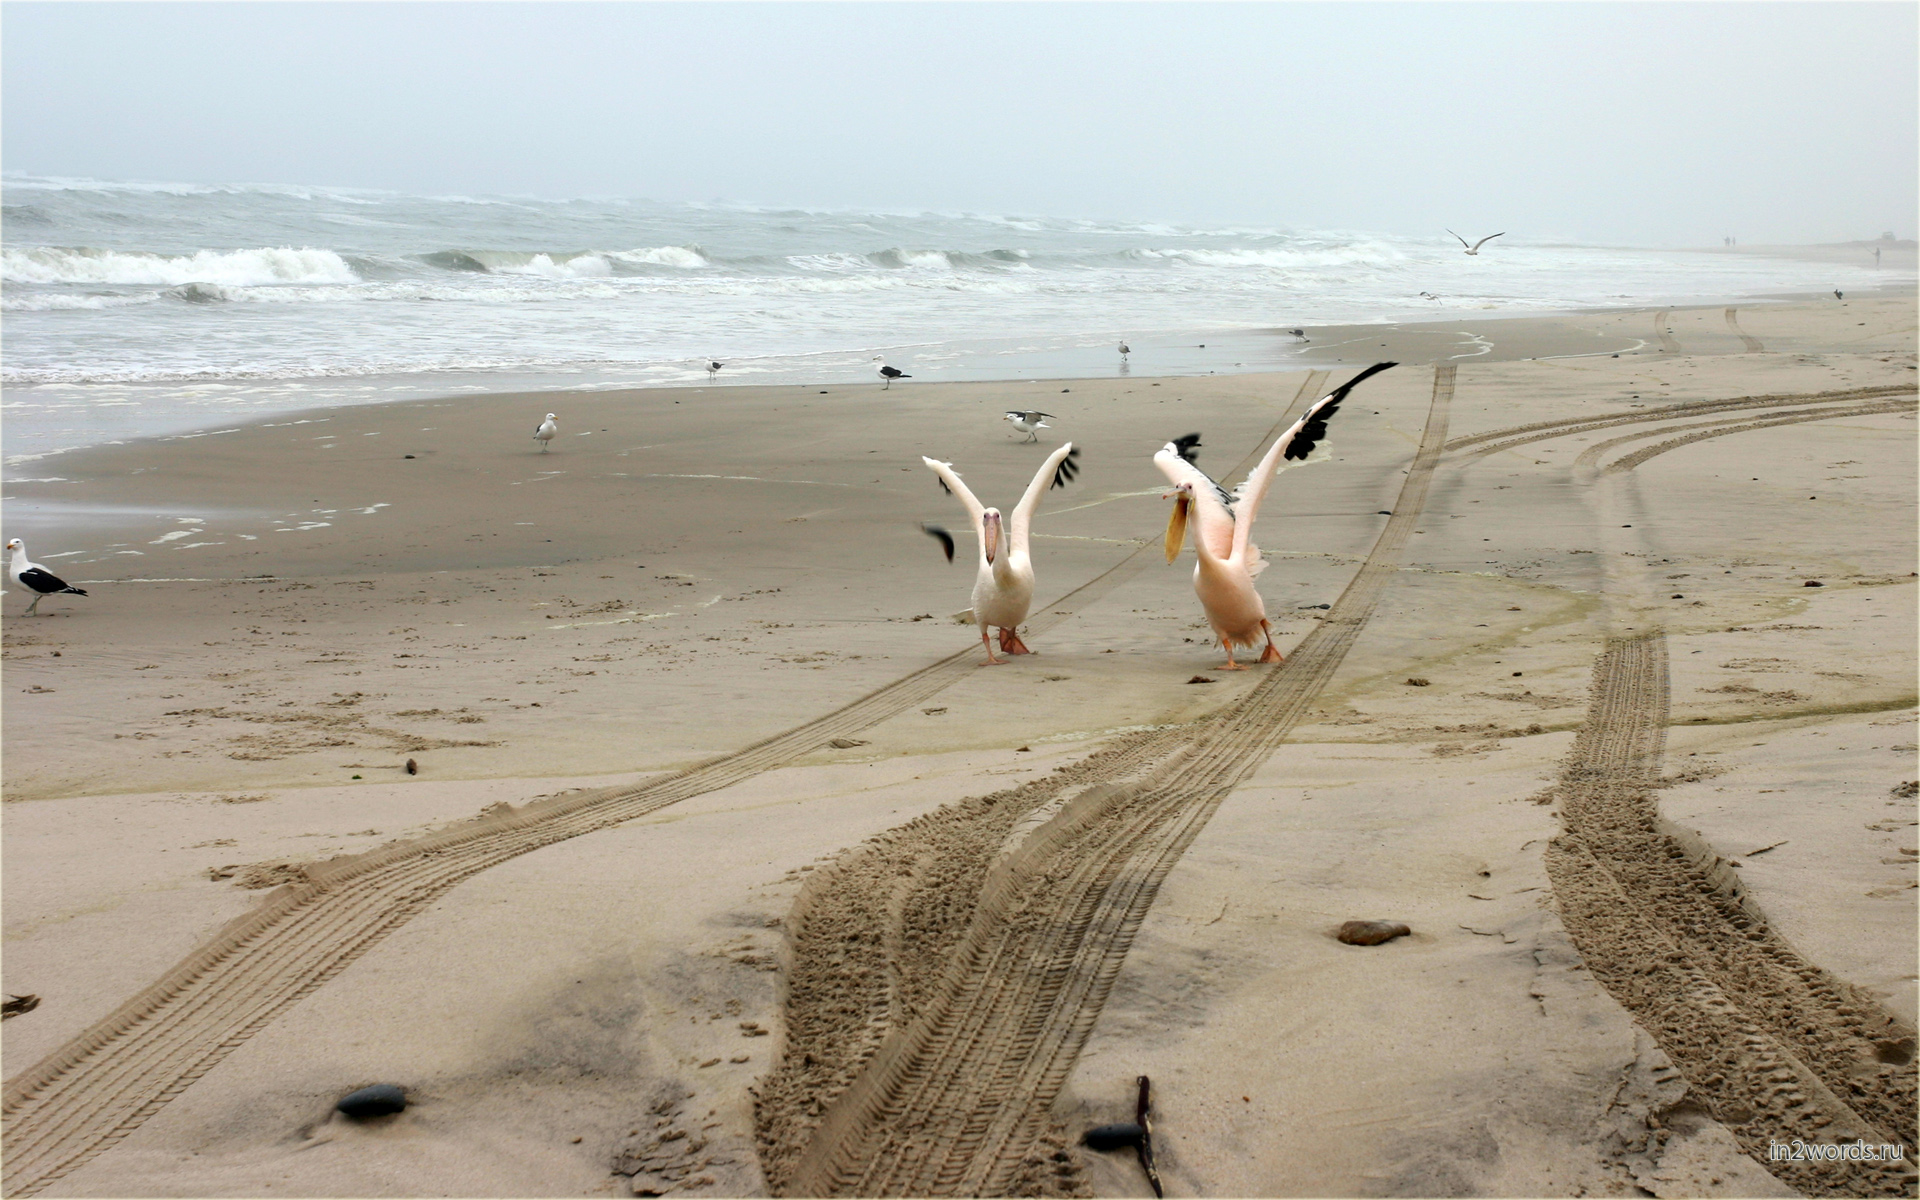 Хищные чайки, агрессивные розовые пеликаны и волны на побережье Волвис Бэй (Walvis Bay), Намибия.